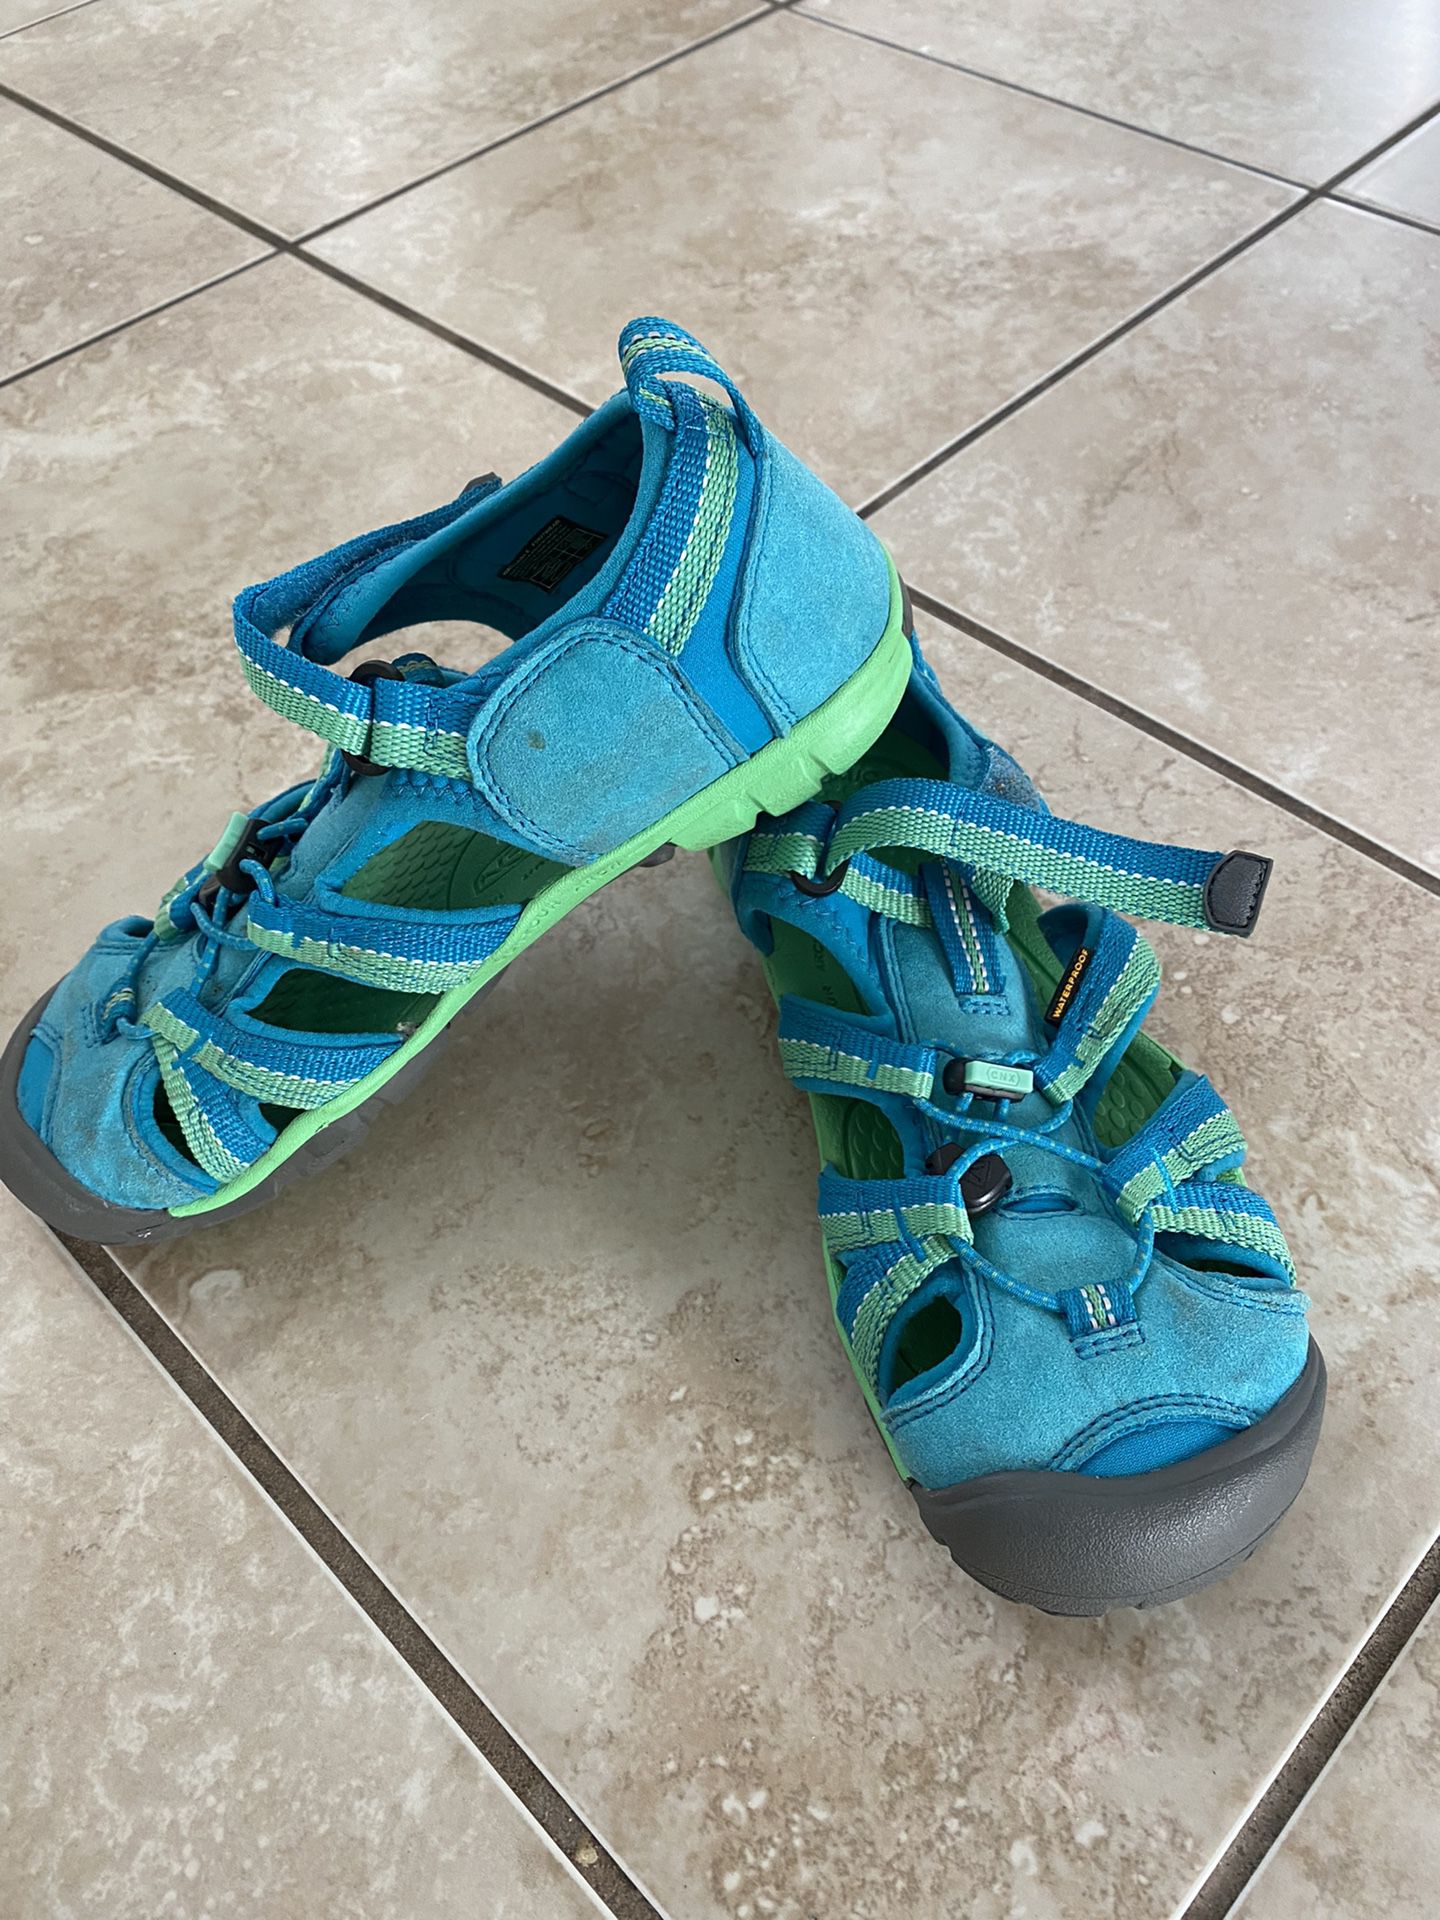 Keen Sandals, Girls Size 4